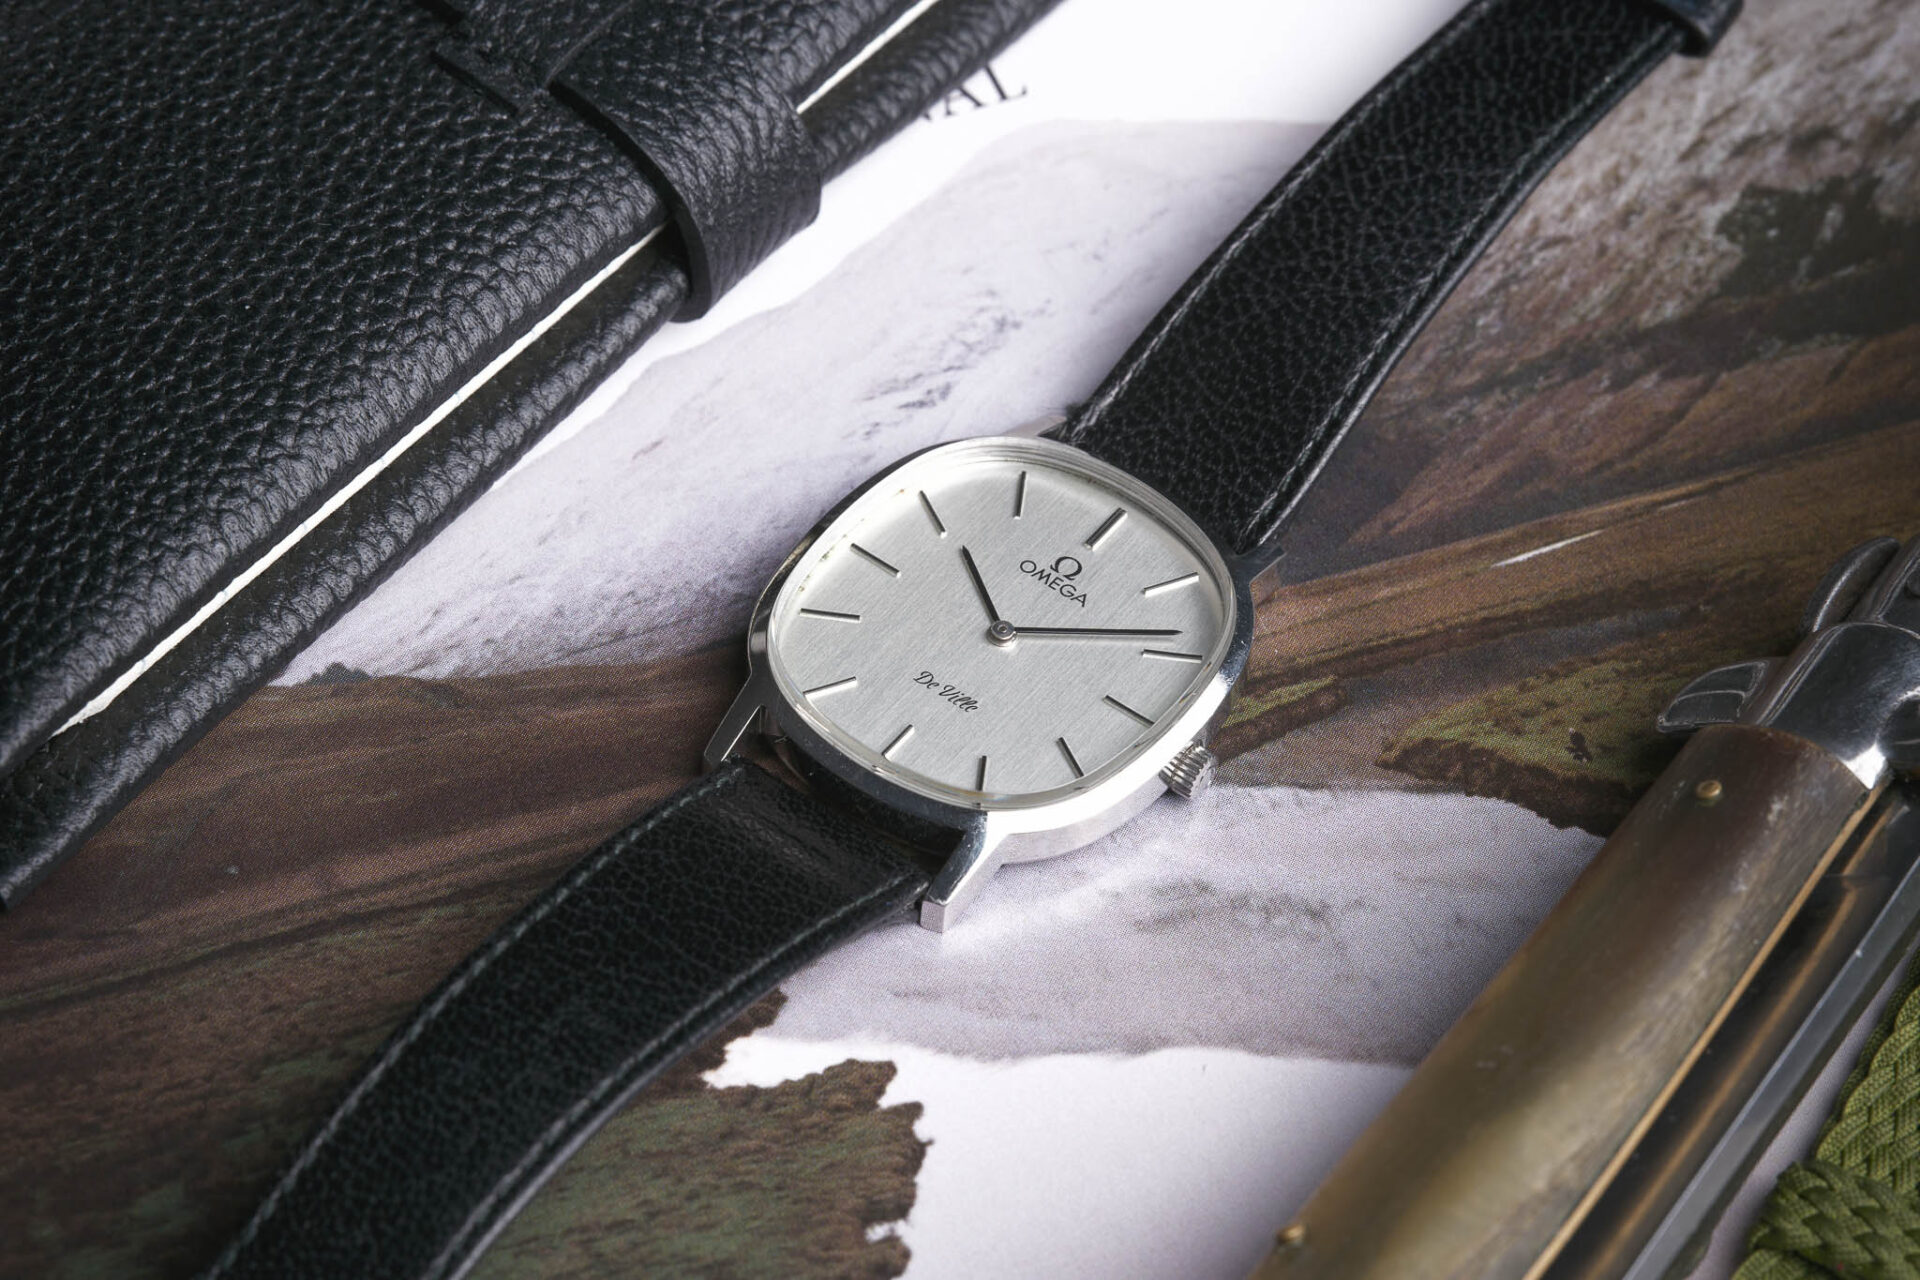 Omega De Ville - Sélection de montres vintage et de collection JOSEPH BONNIE